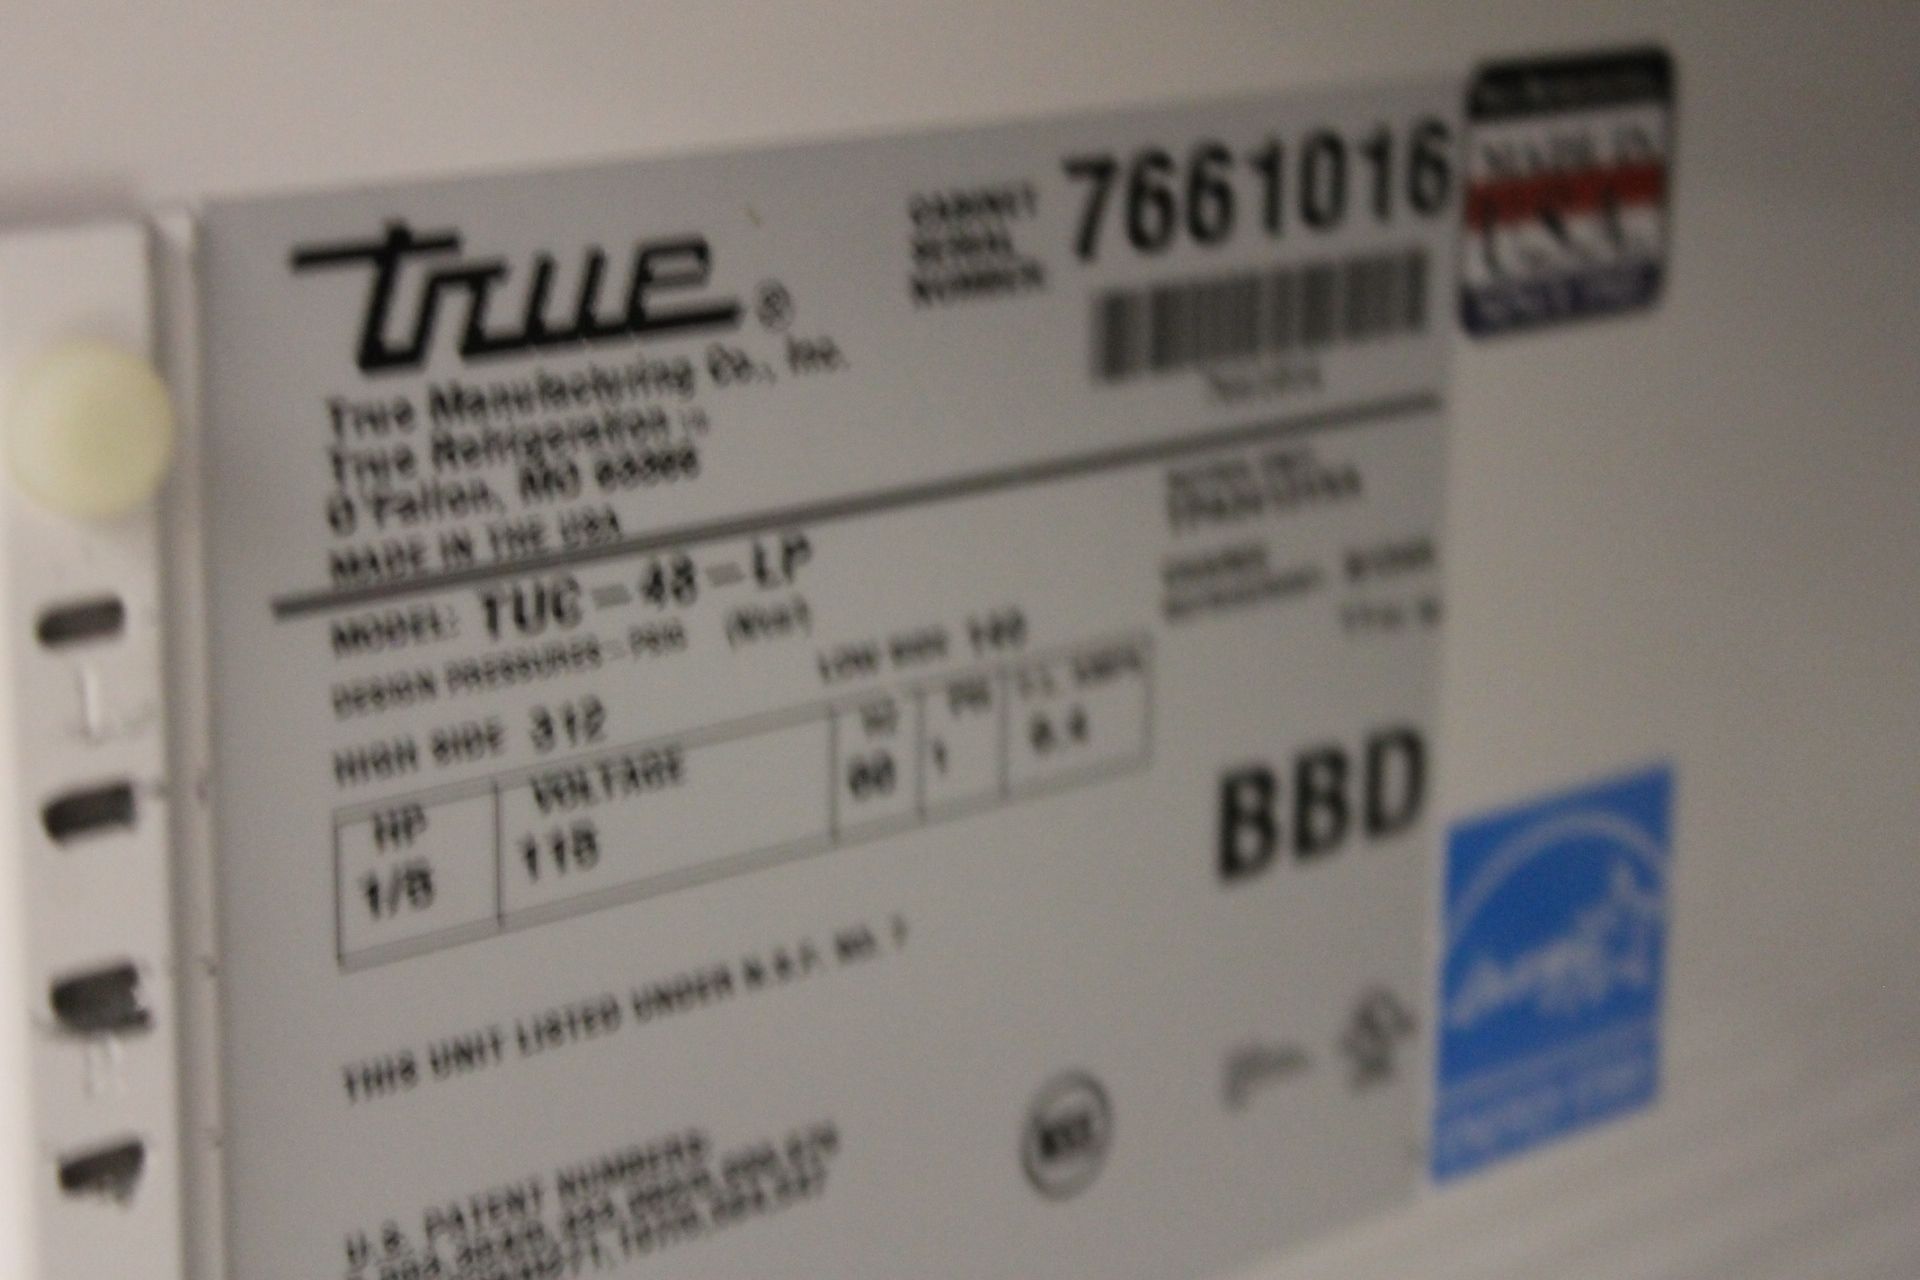 True 2 Door 48" Low Profile Under Counter Cooler - model #TUC-48-LP - Image 2 of 6